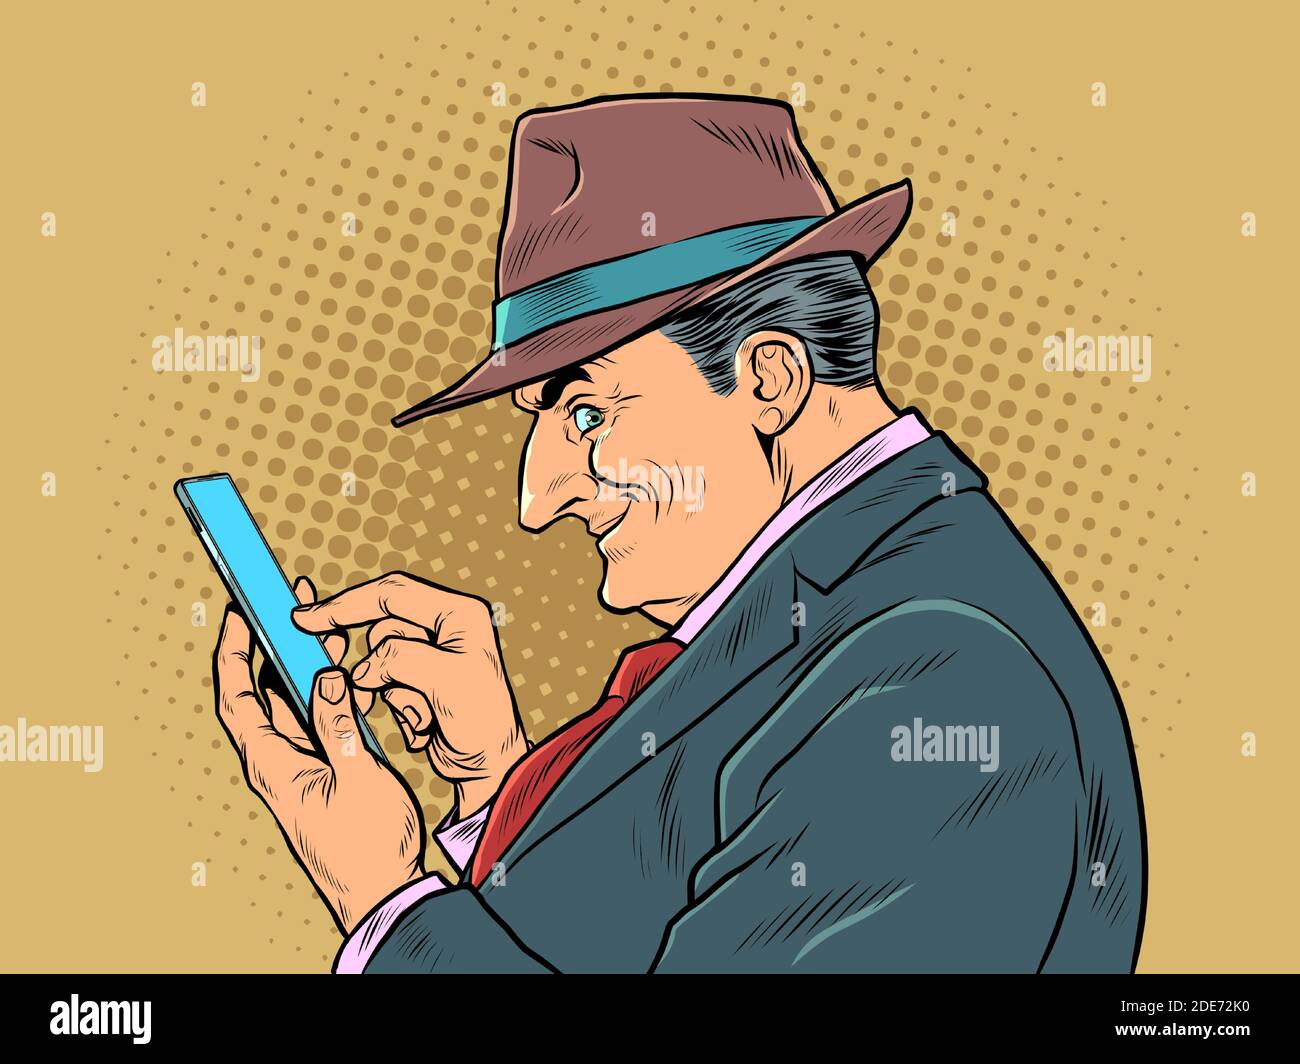 Un homme d'affaires âgé avec un smartphone. Le patron regarde les messages Illustration de Vecteur